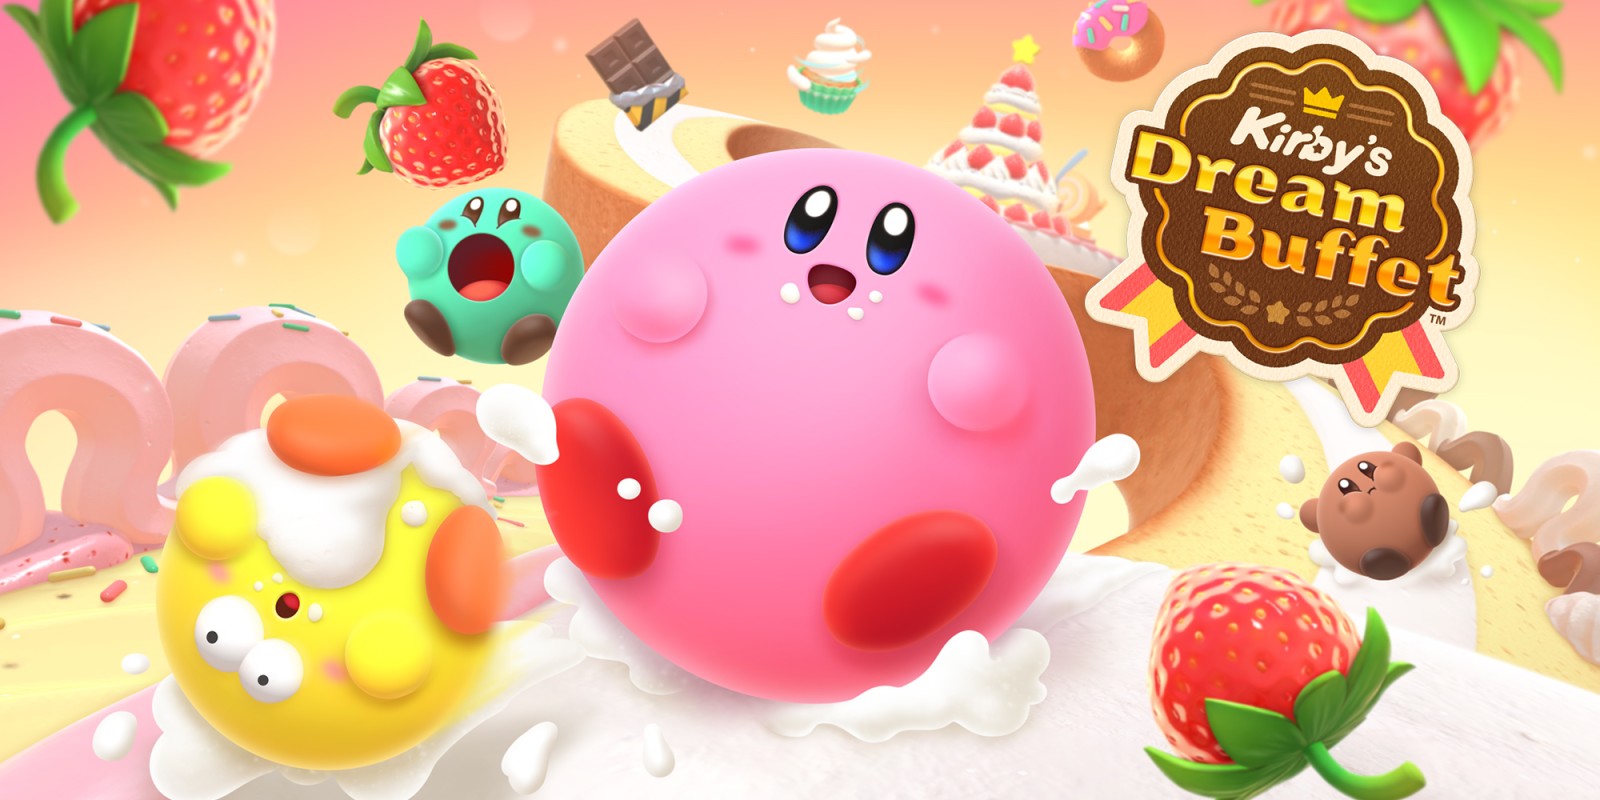 Анонс Kirby's Dream Buffet - змагальної аркади про поїдання смаколиків